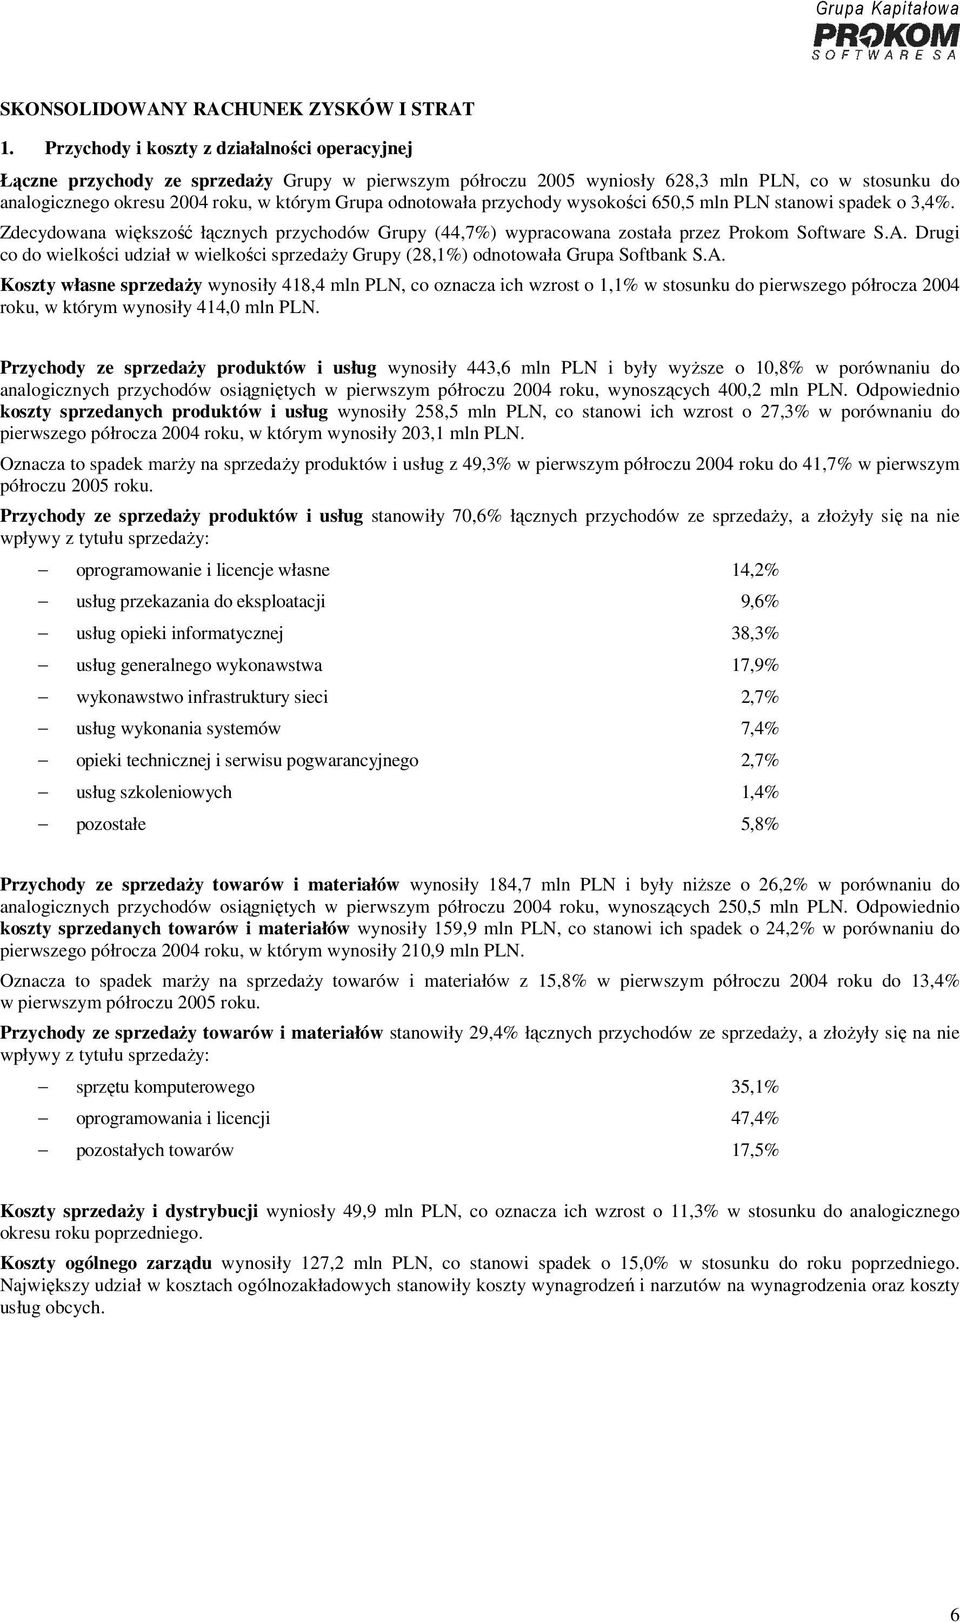 odnotowała przychody wysokości 650,5 mln PLN stanowi spadek o 3,4%. Zdecydowana większość łącznych przychodów Grupy (44,7%) wypracowana została przez Prokom Software S.A.